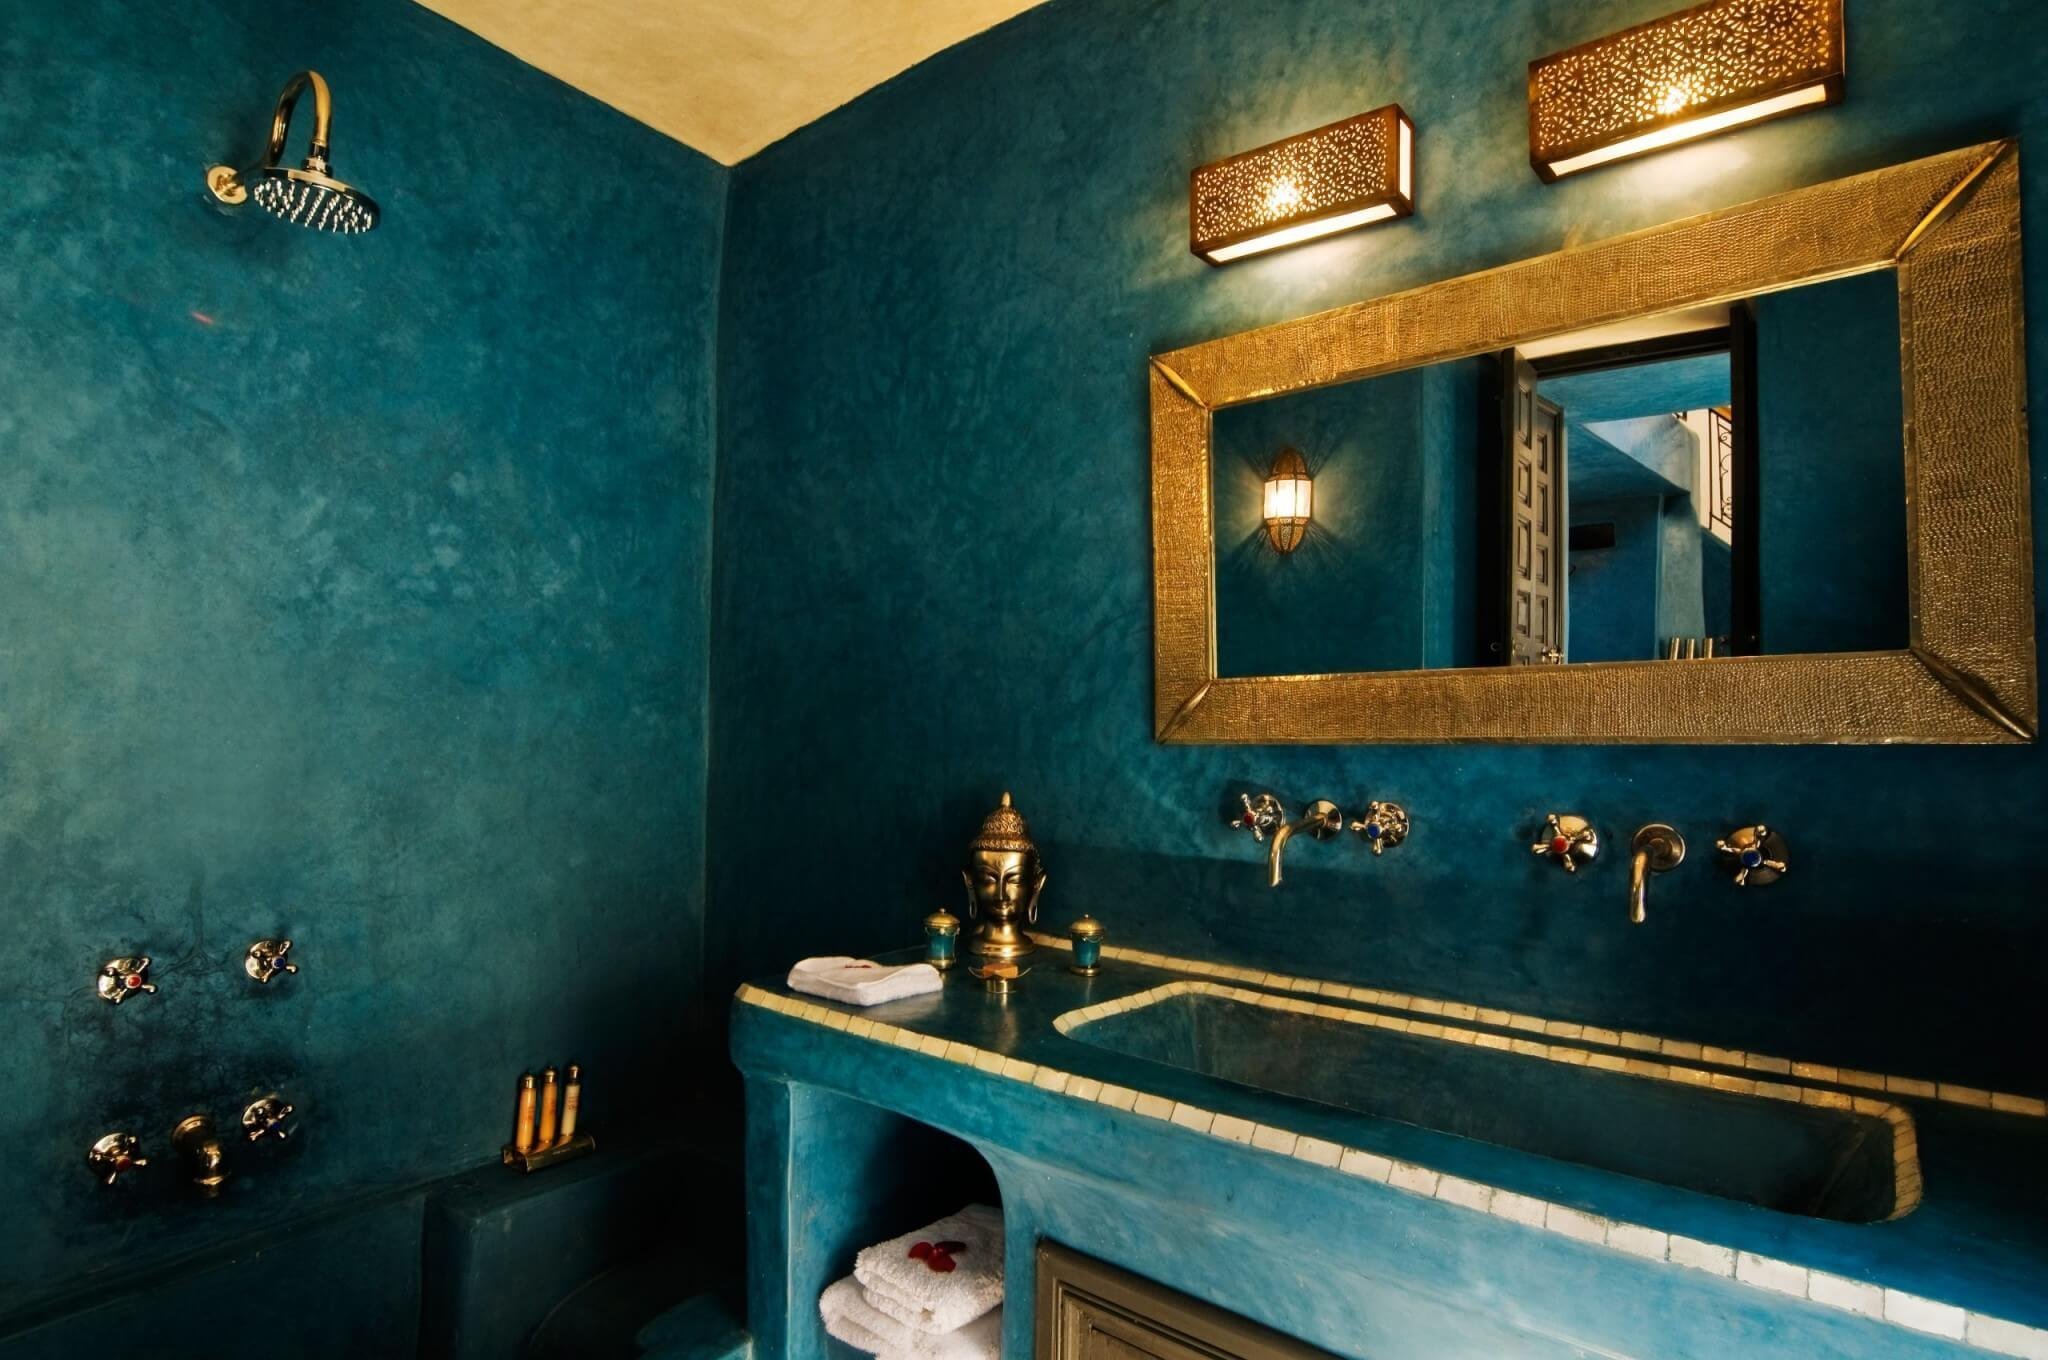 венецианская штукатурка в ванной комнате фото